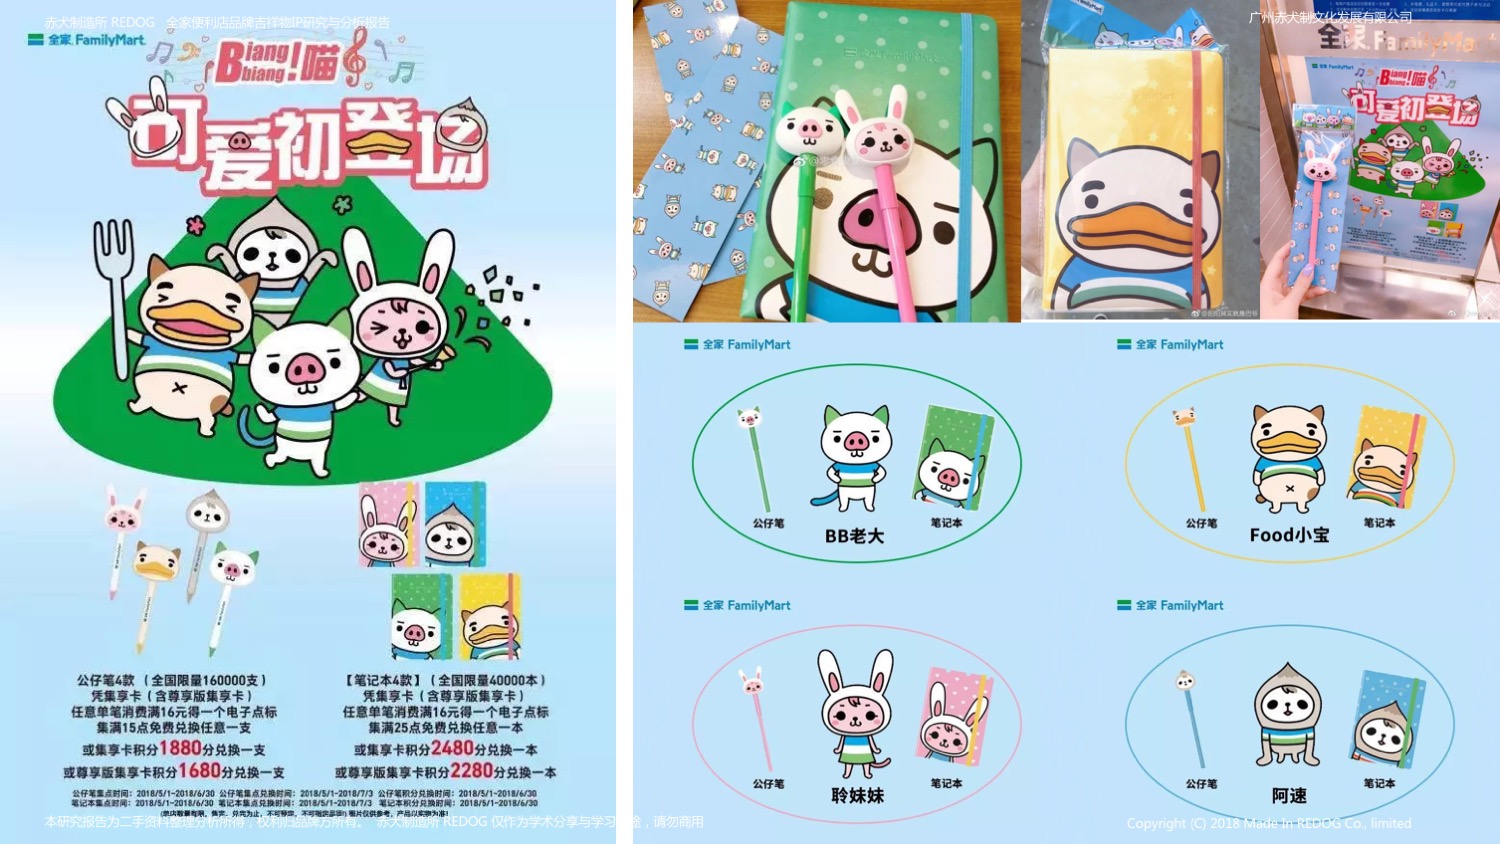 全家便利店品牌吉祥物ip研究报告-family mart biangbiang喵(附视频